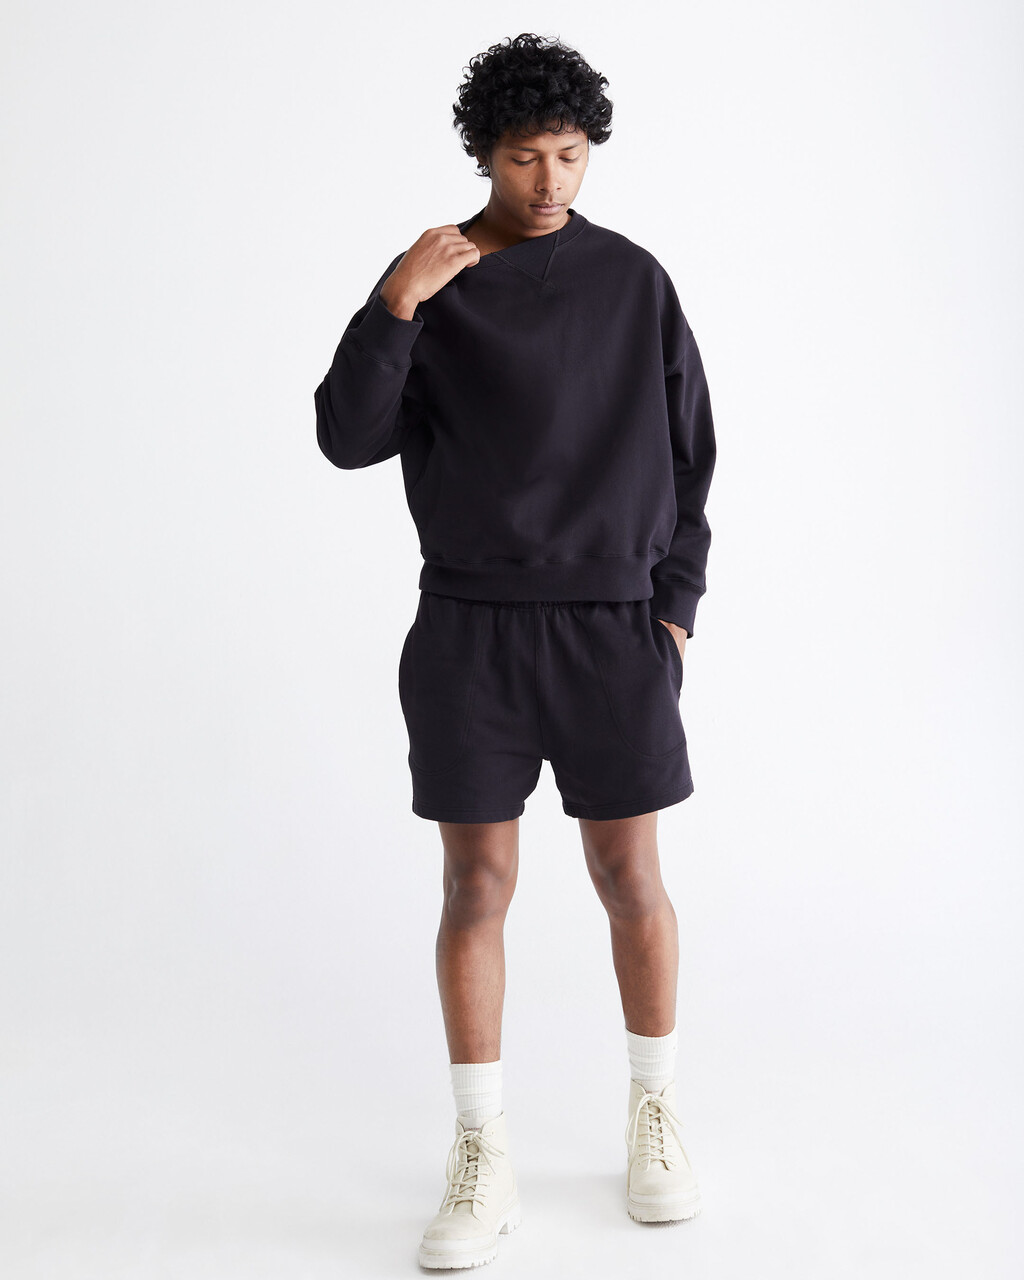 Standards Fleece Crewneck Sweatshirt, BLACK BEAUTY-00, hi-res